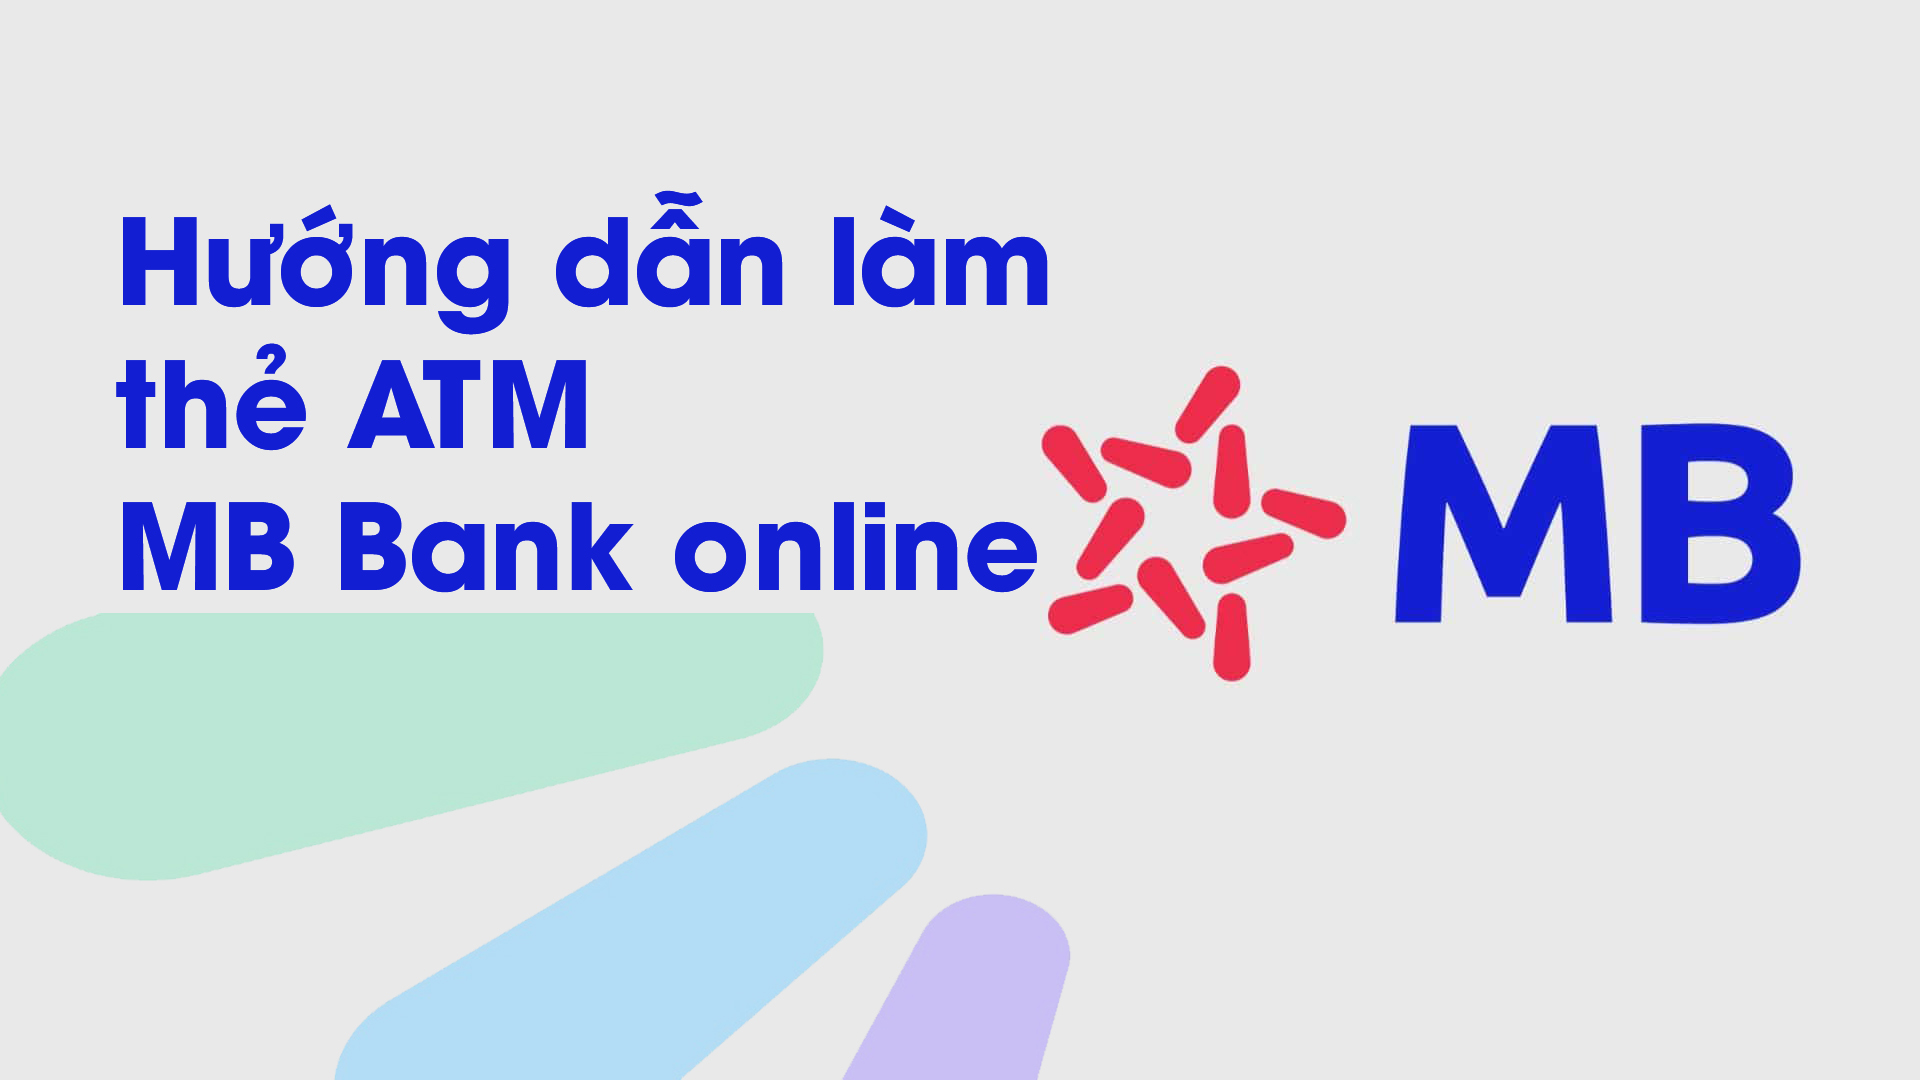 Hướng dẫn làm thẻ ATM MB Bank online - Vay Tiền Online Nhanh